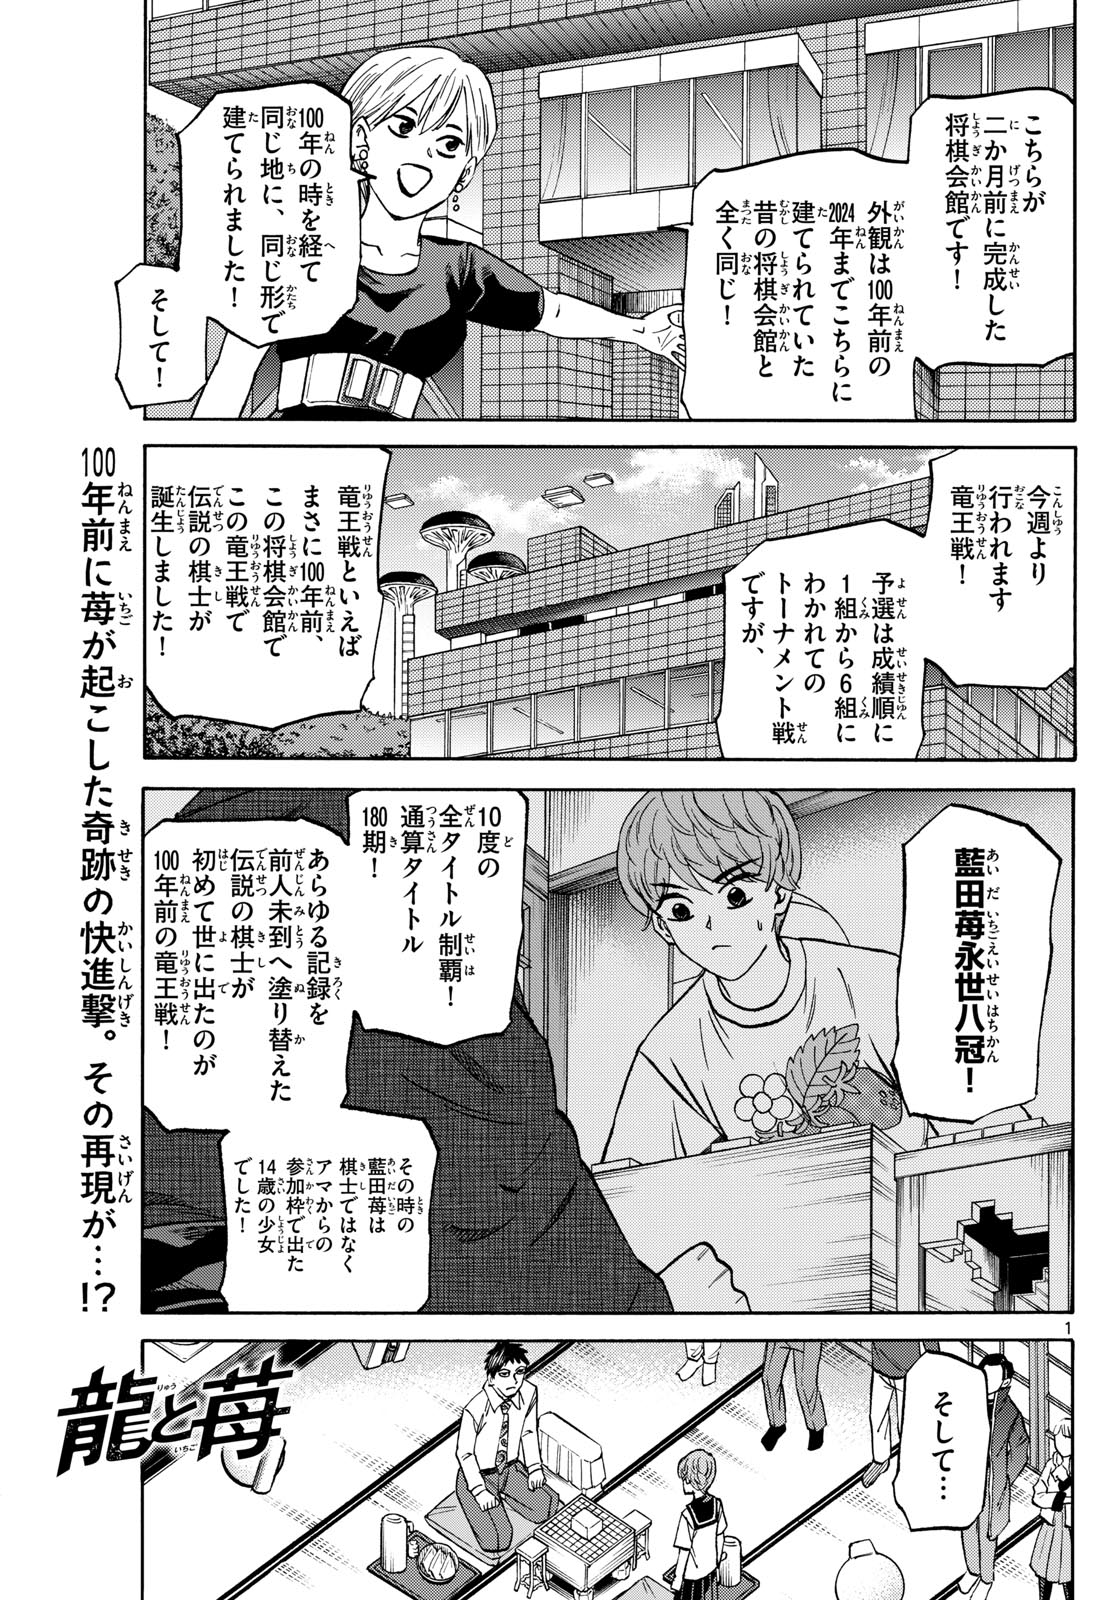 Tatsu to Ichigo - Chapter 189 - Page 1